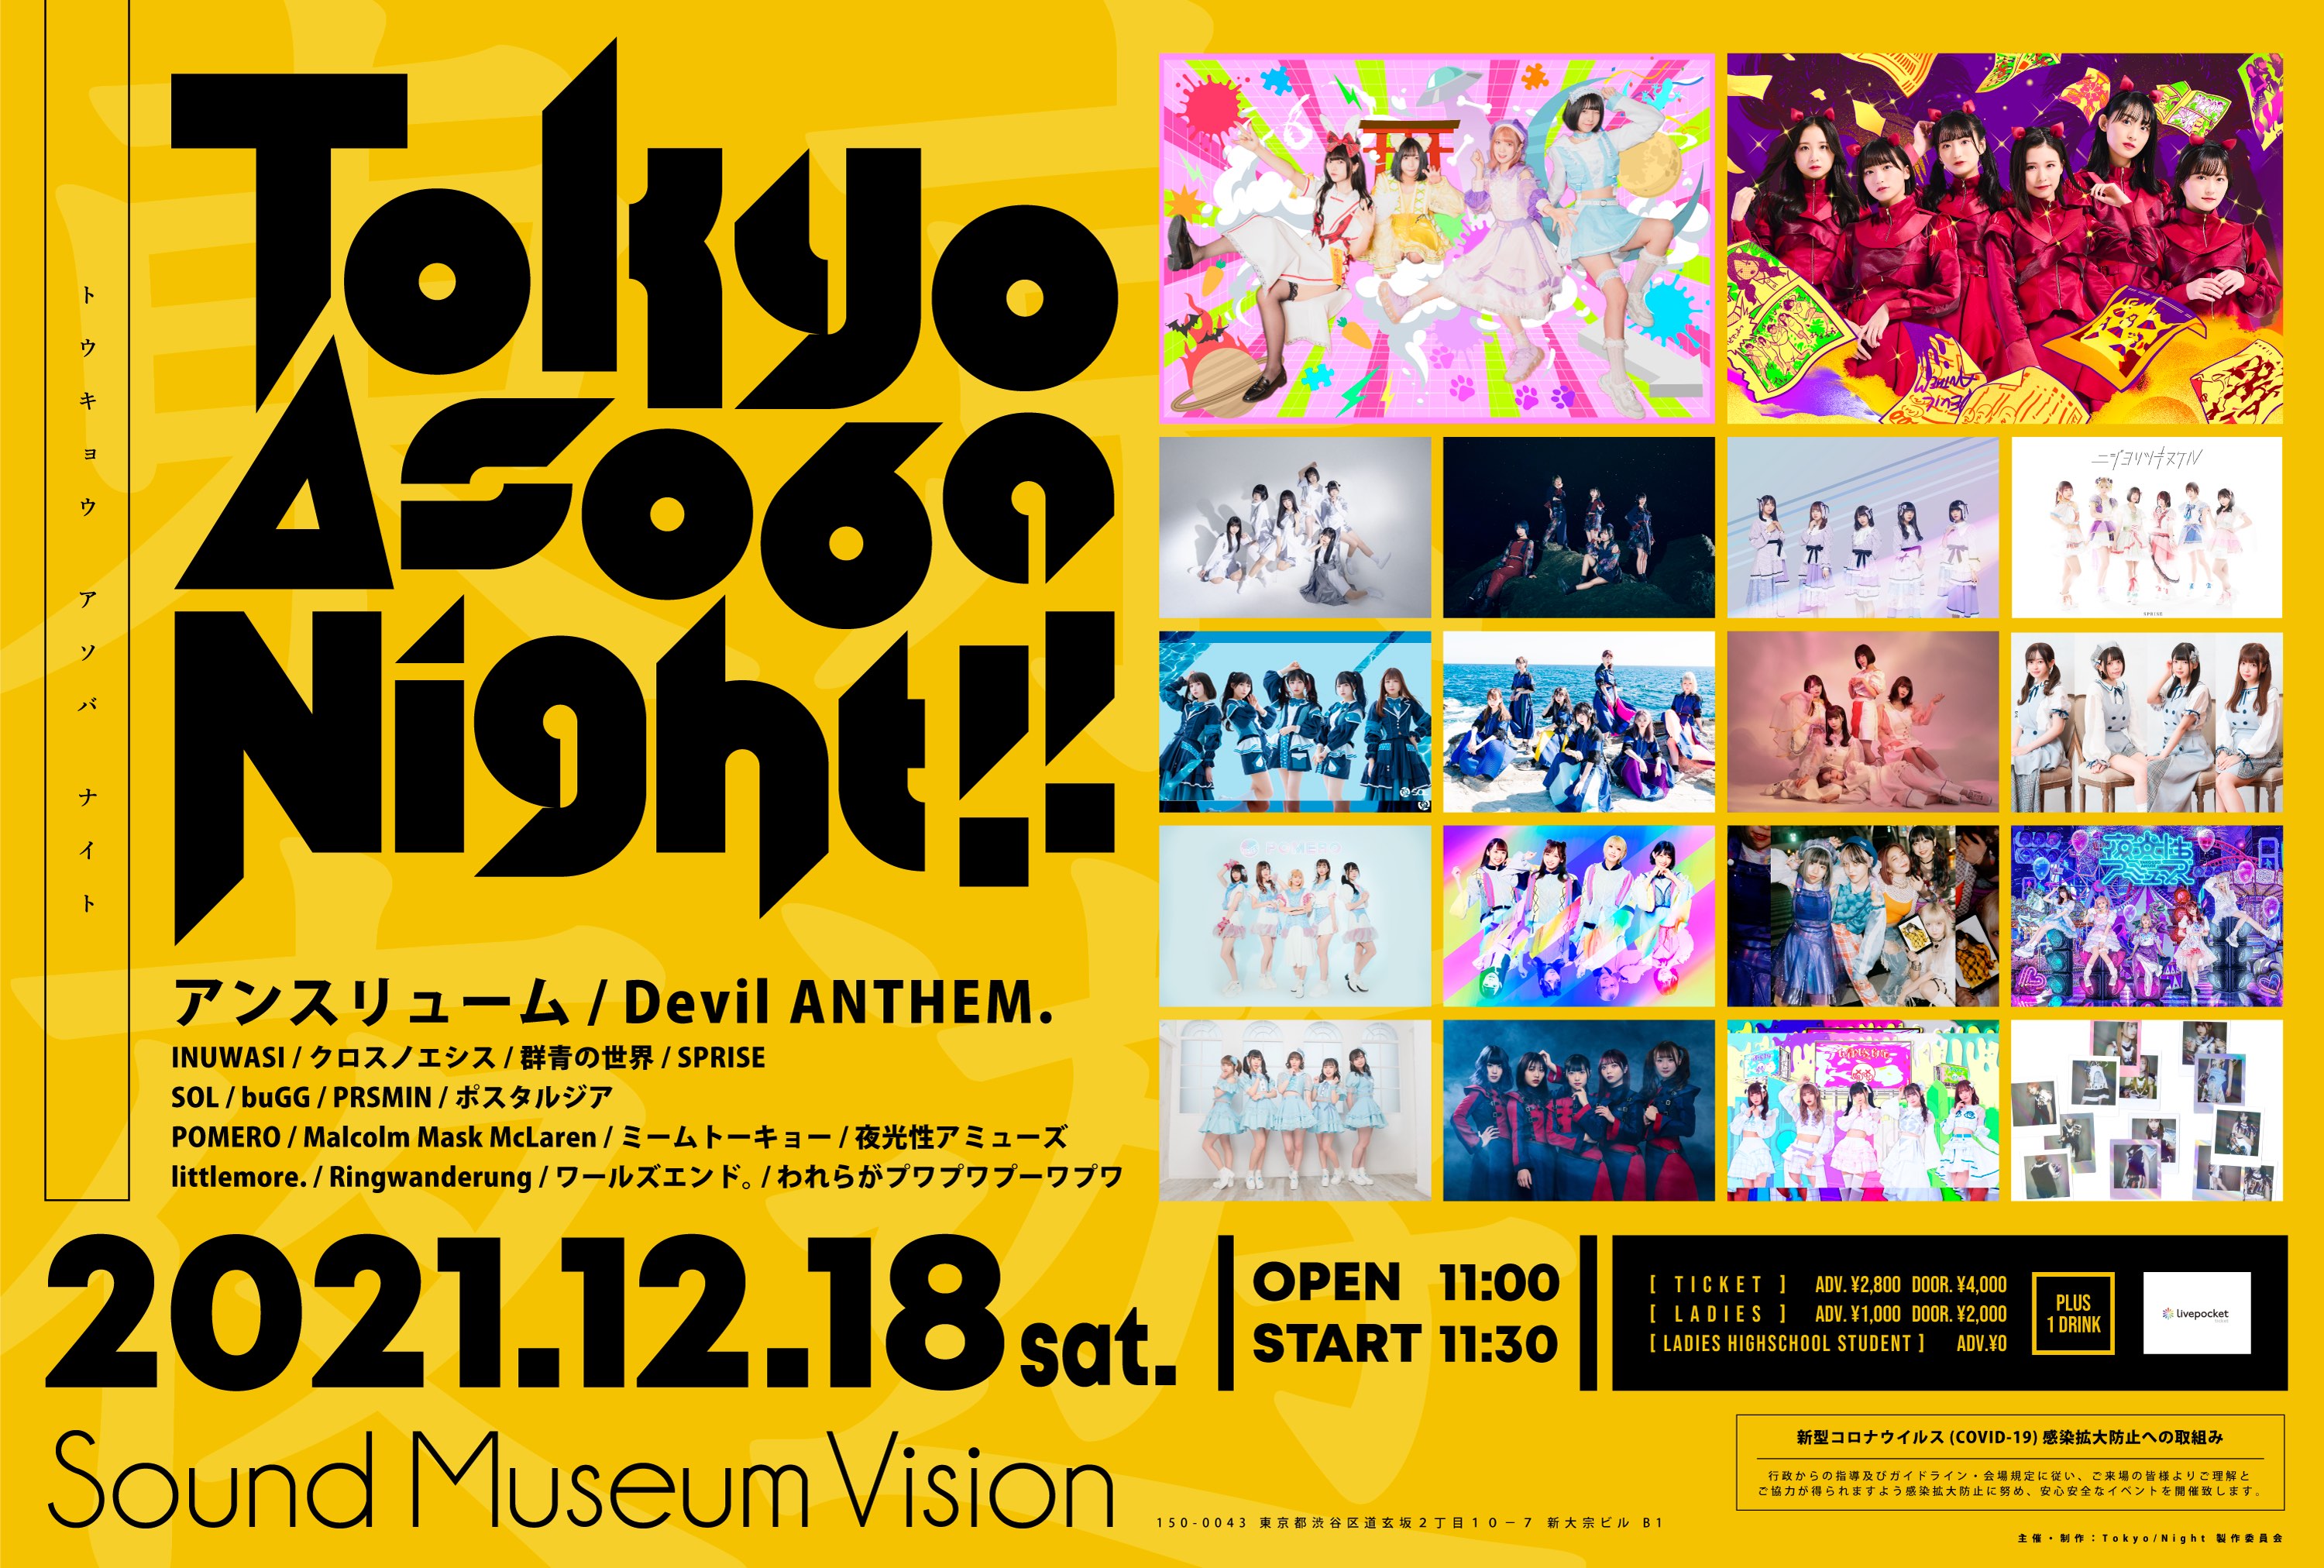 「 Tokyo Asoba Night!! 」